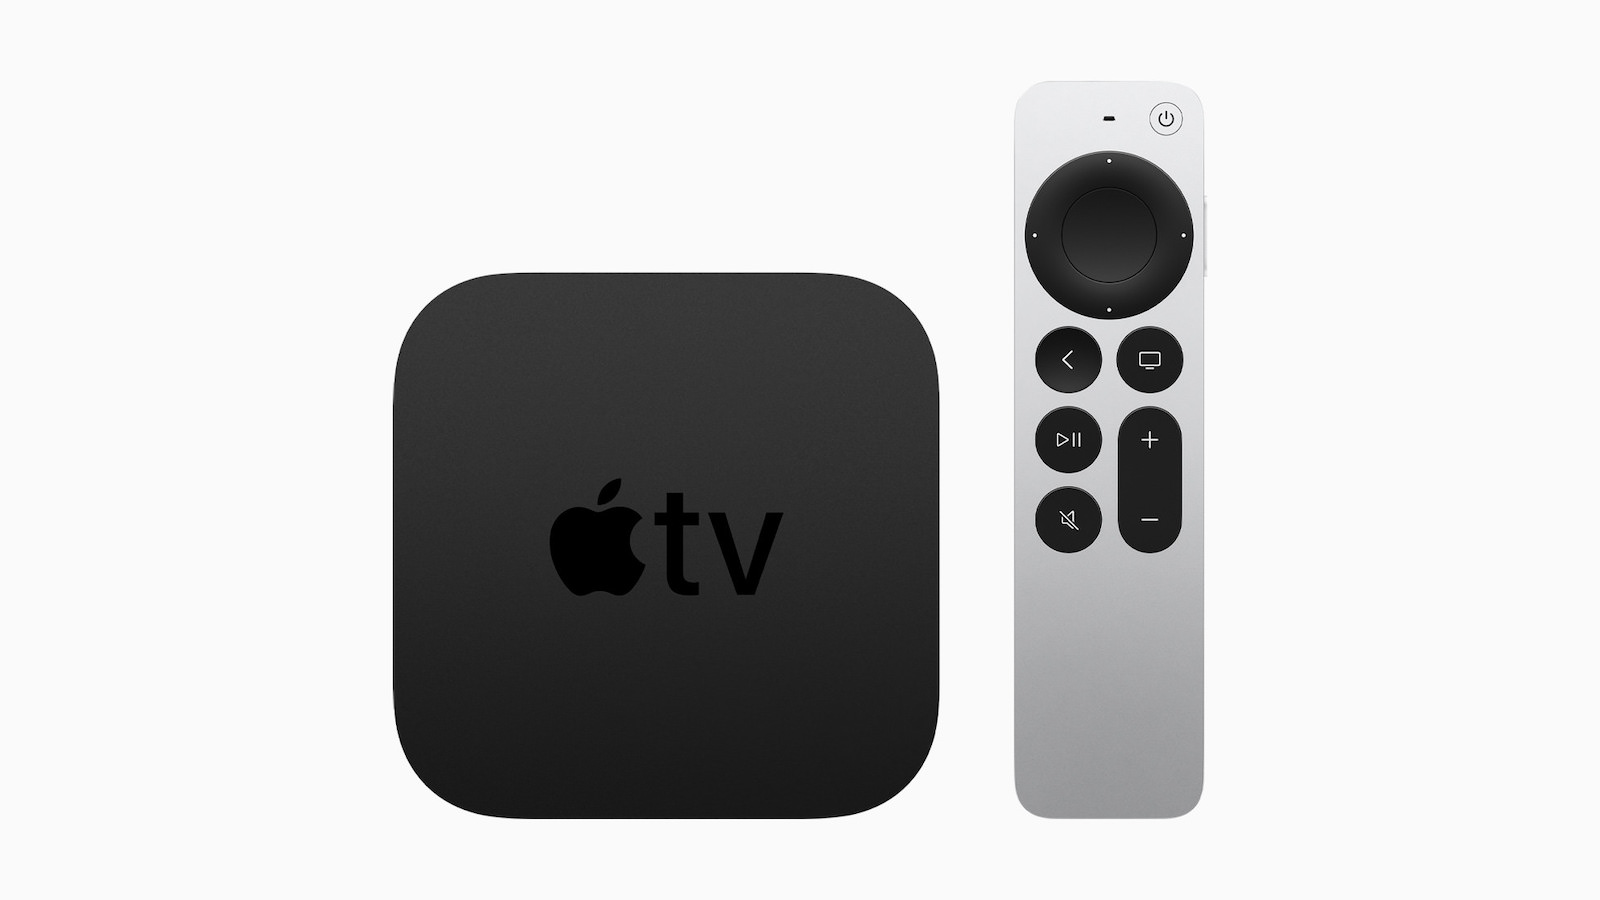 Apple_unveils-the-next-gen-of-AppleTV4K_042021.jpg